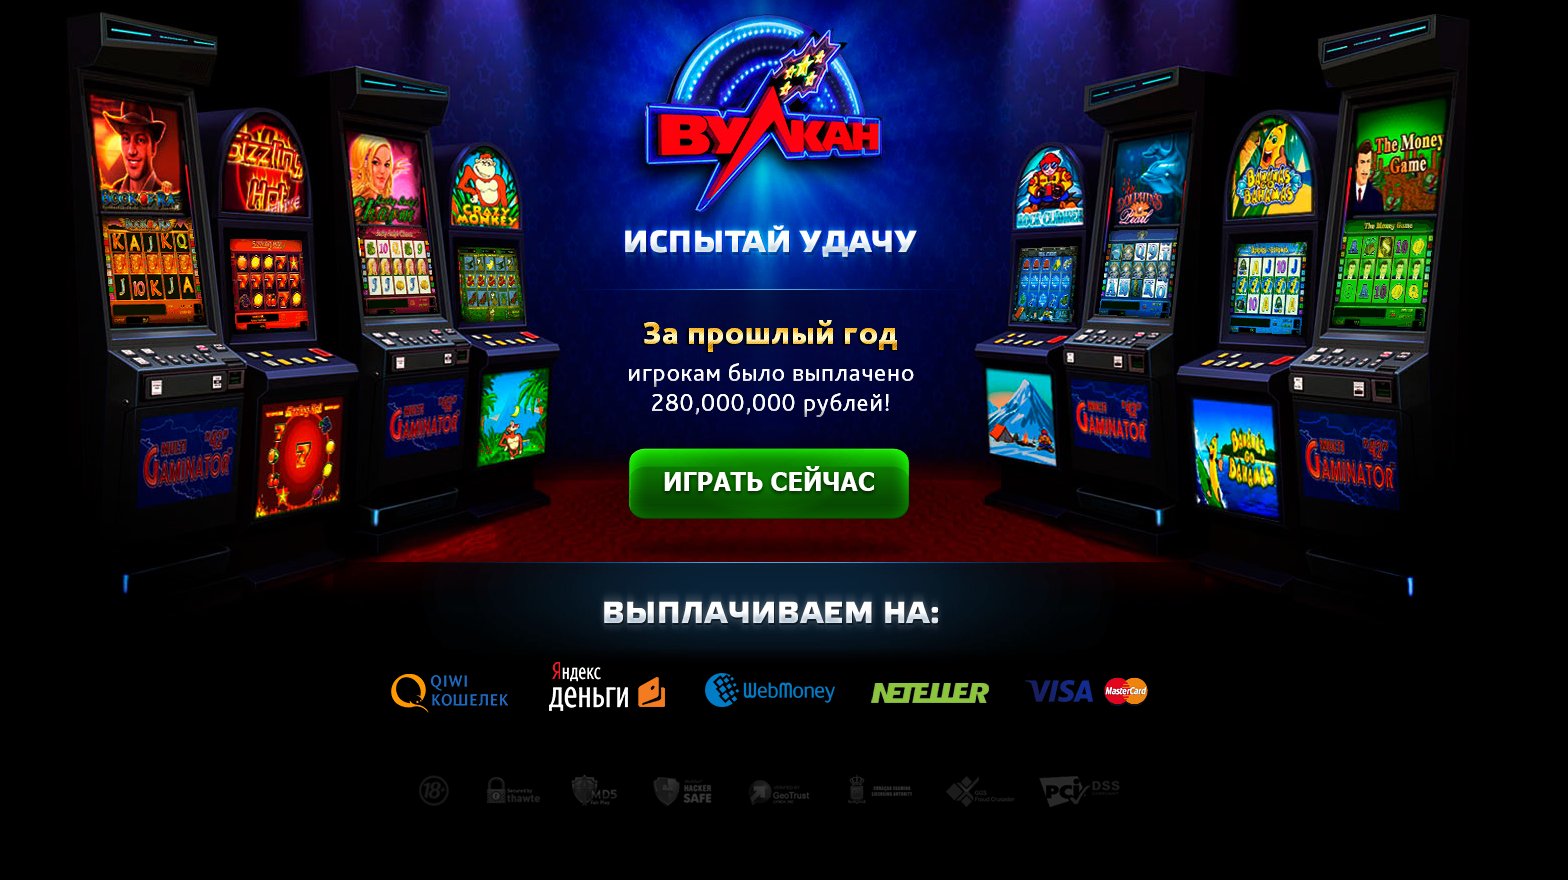 Вулкан игровые автоматы россии мобильное казино пин ап